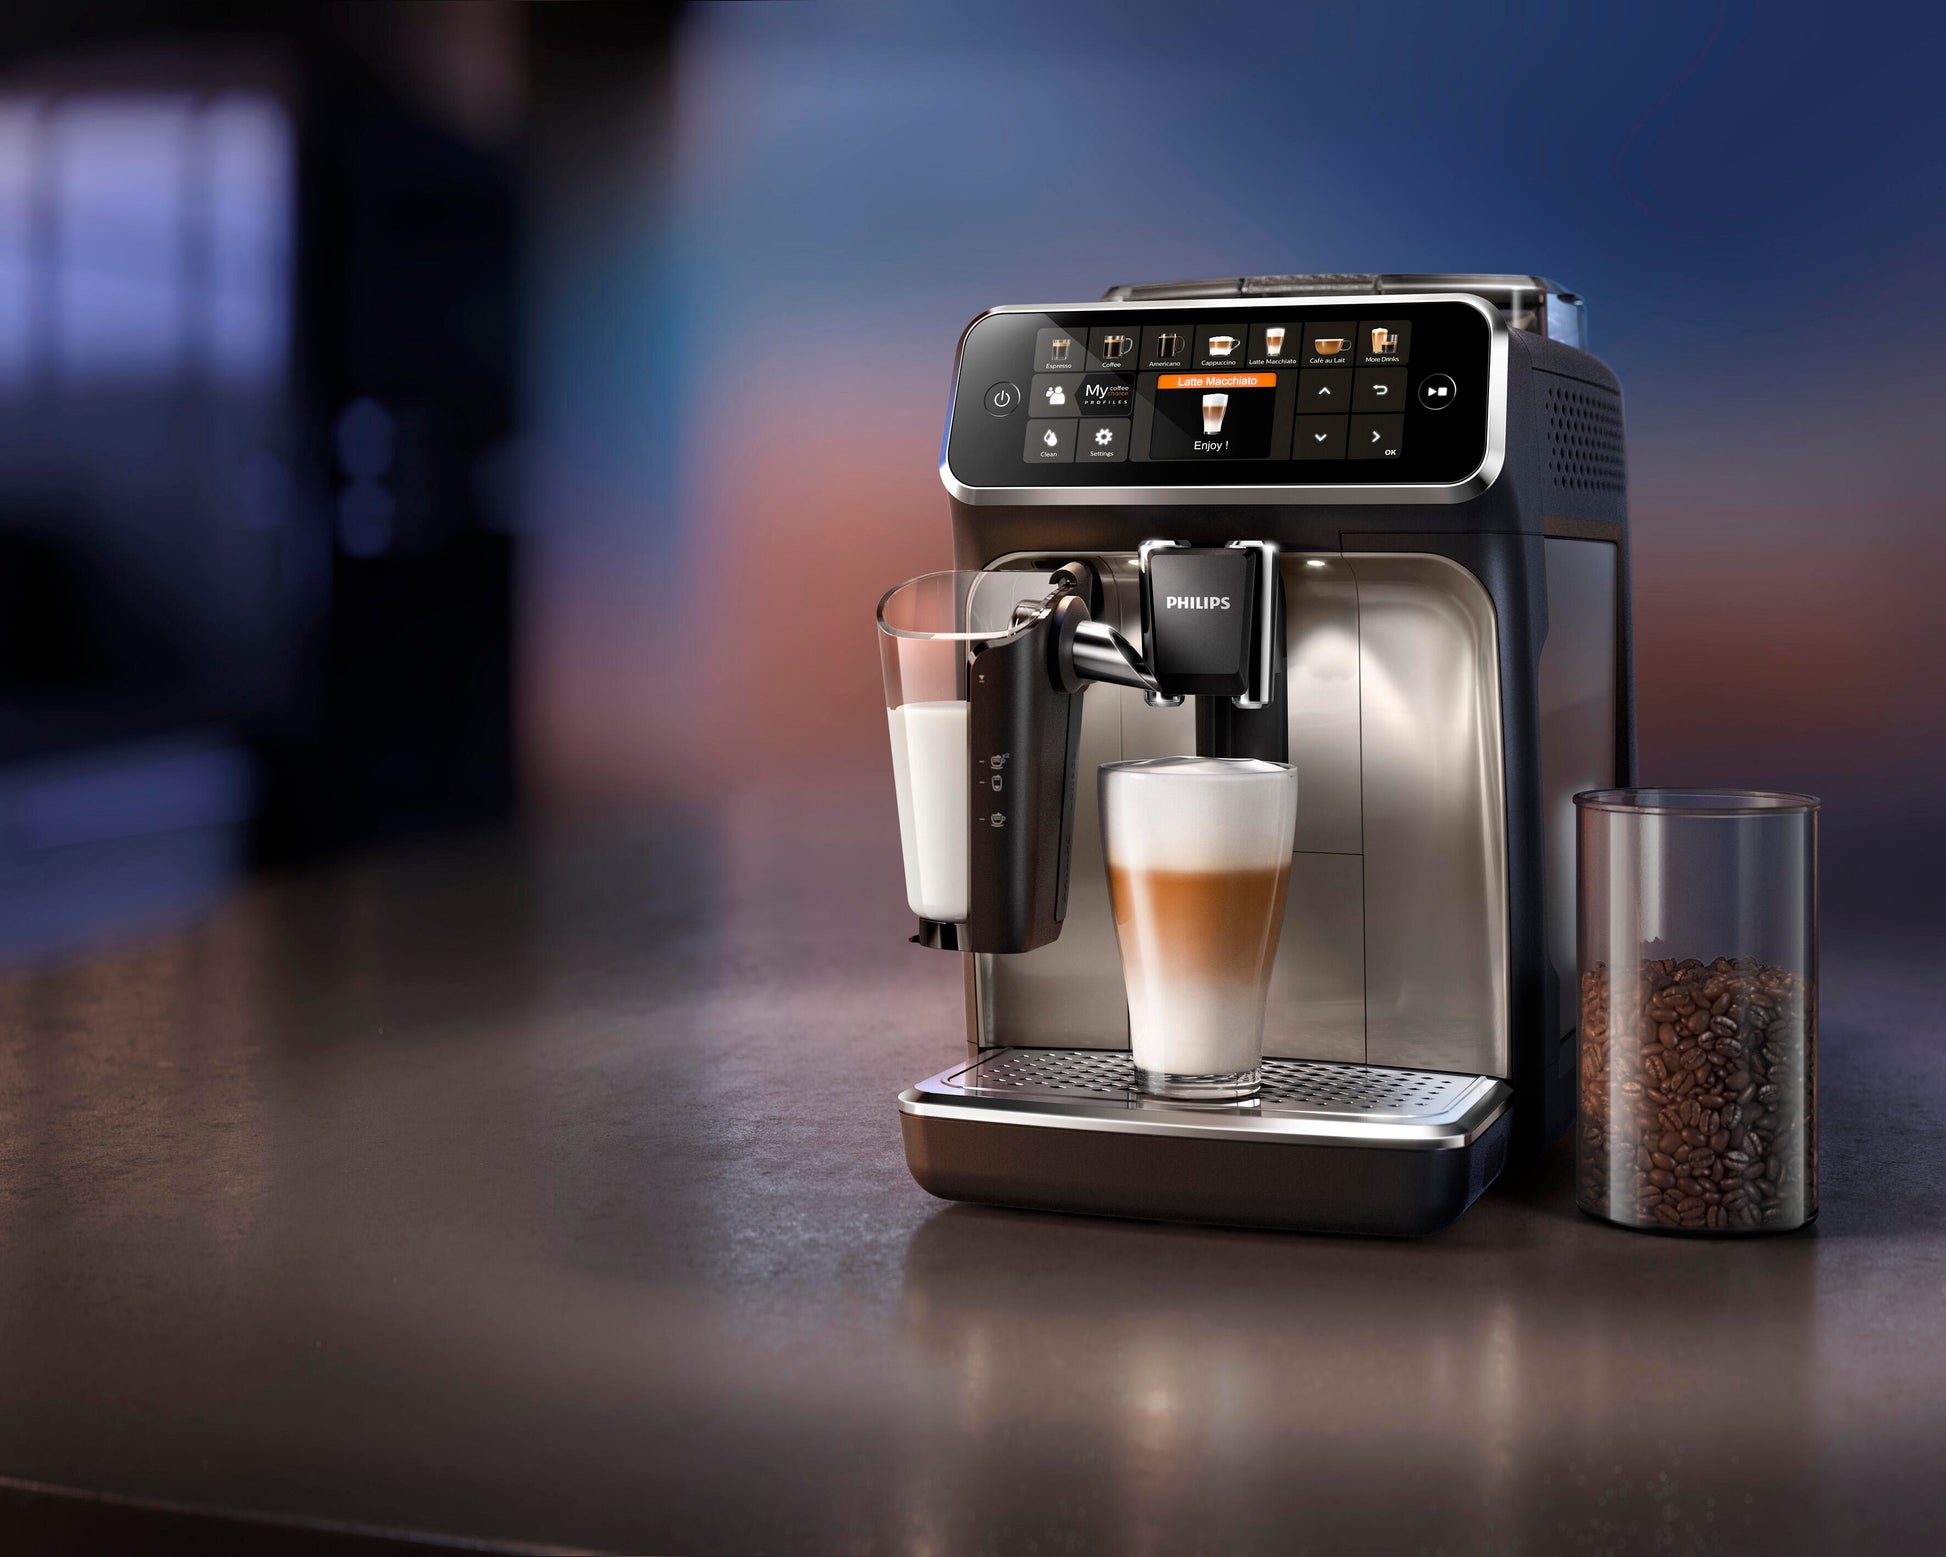 Cafetera espresso superautomática Philips serie 5400 LatteGo, 12 tipos de  café